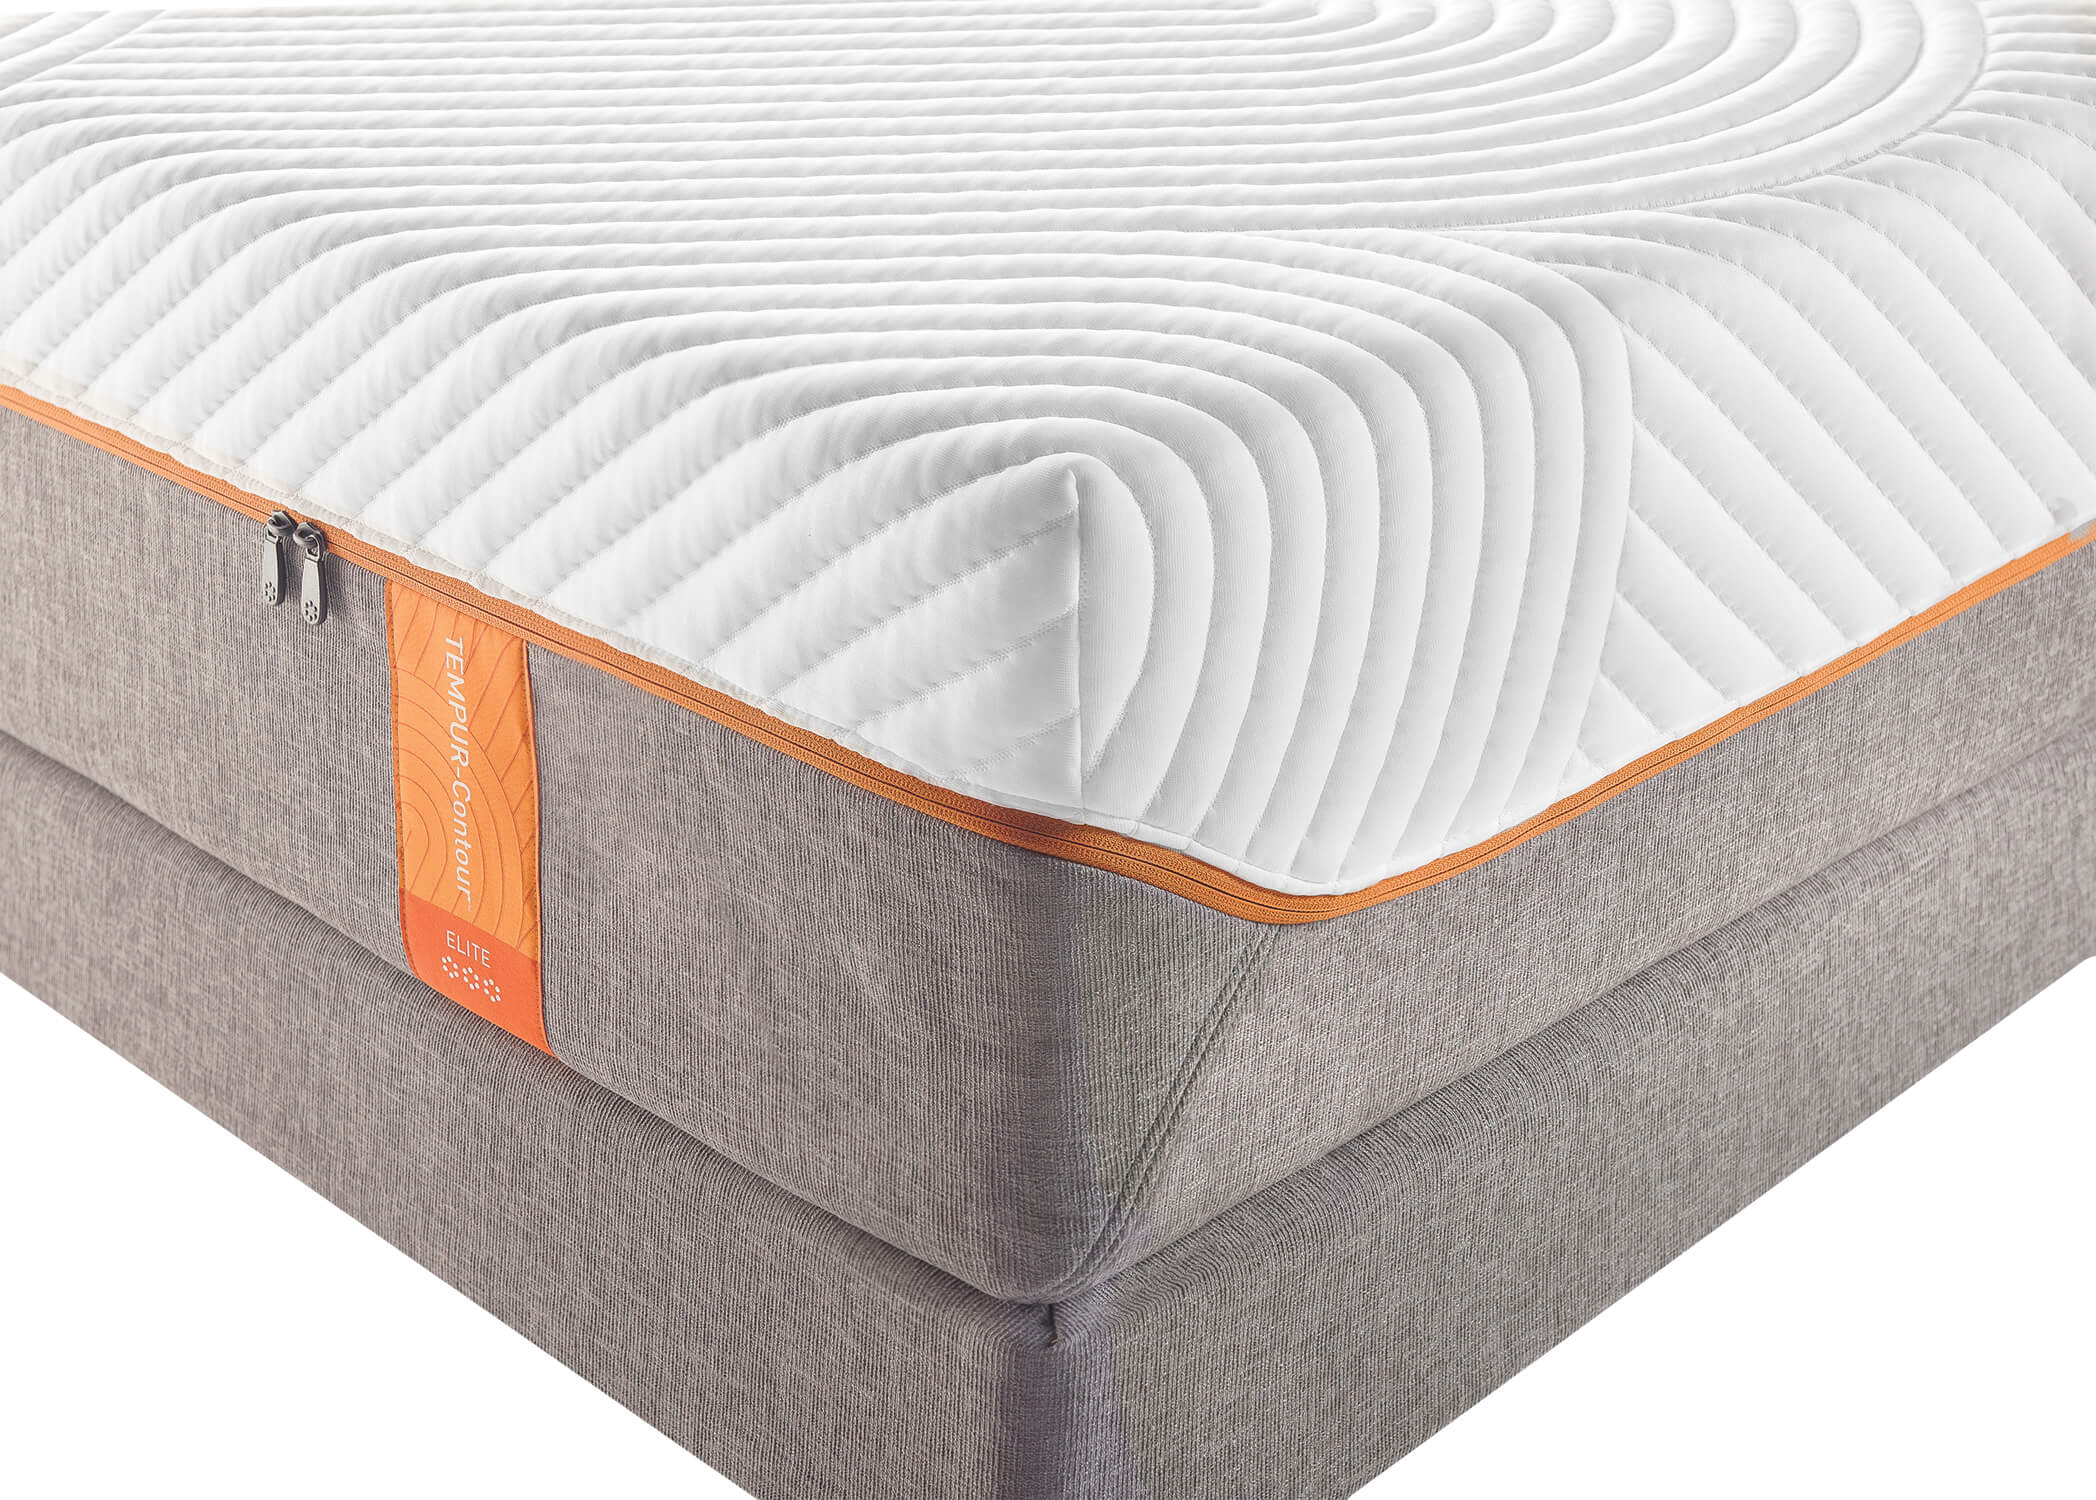 tempur-contour elite breeze mattress review